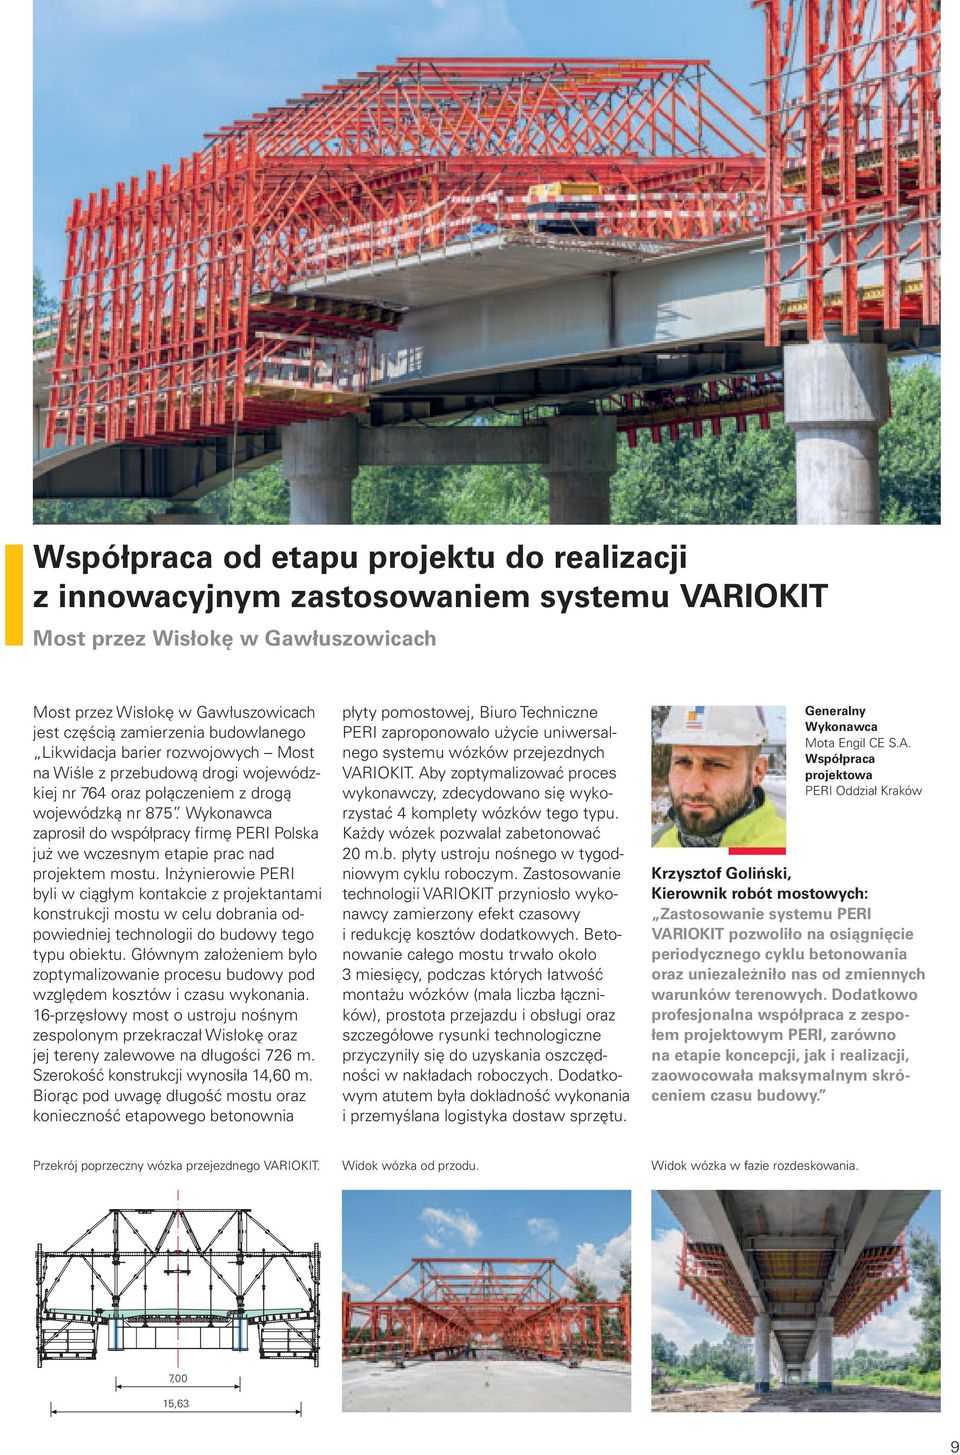 Wykonawca zaprosił do współpracy firmę PERI Polska już we wczesnym etapie prac nad projektem mostu.